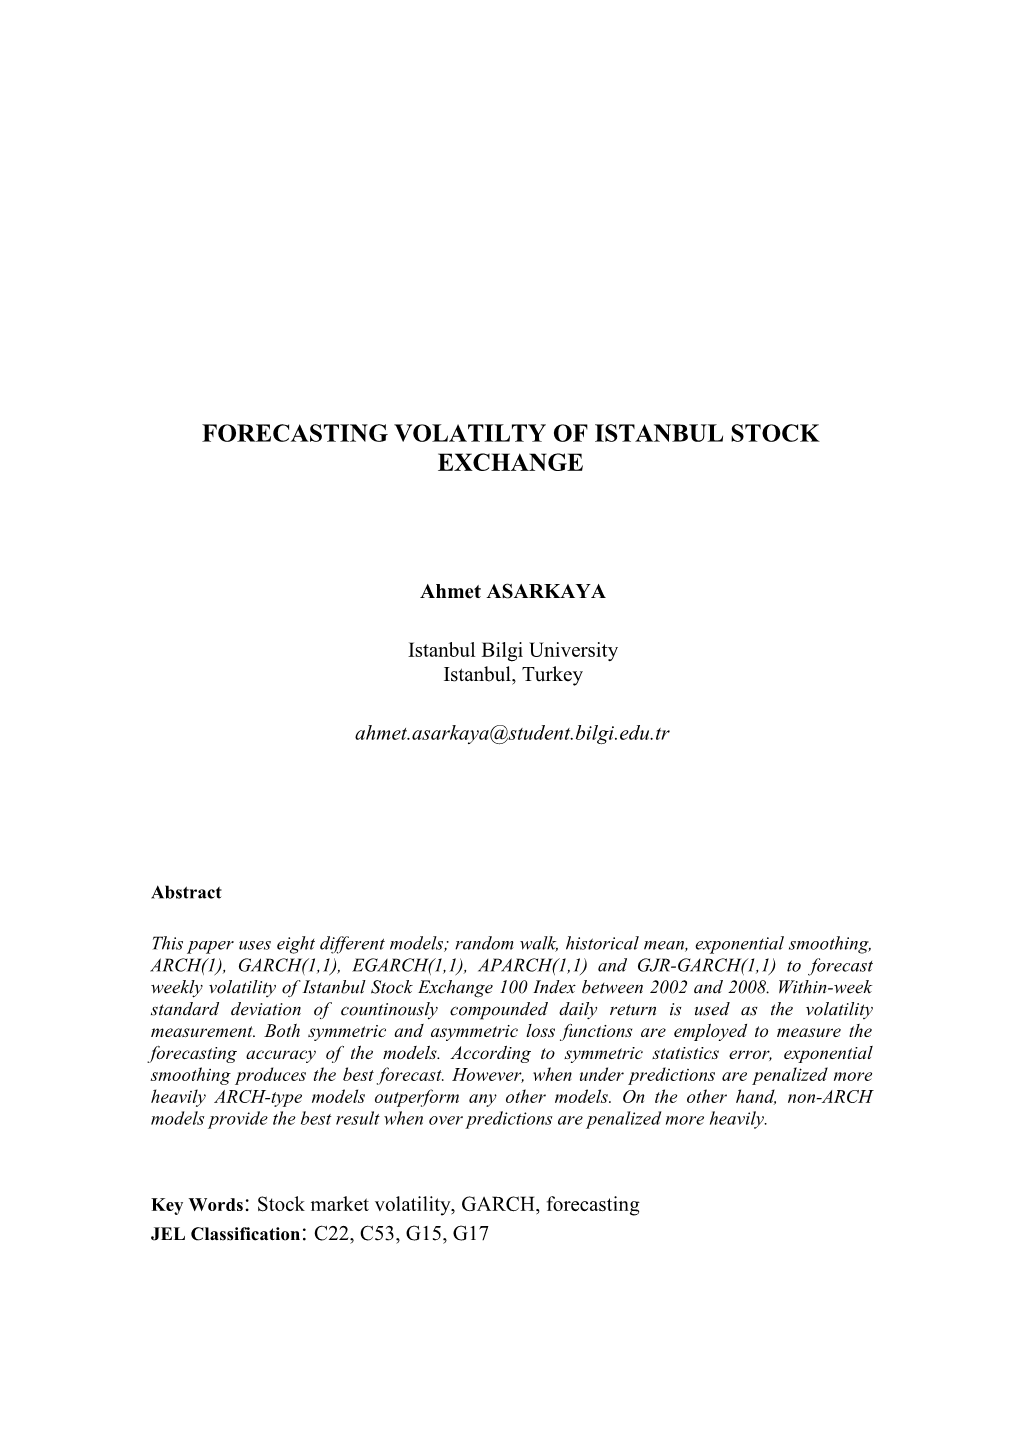 Forecasting Volatilty of Istanbul Stock Exchange